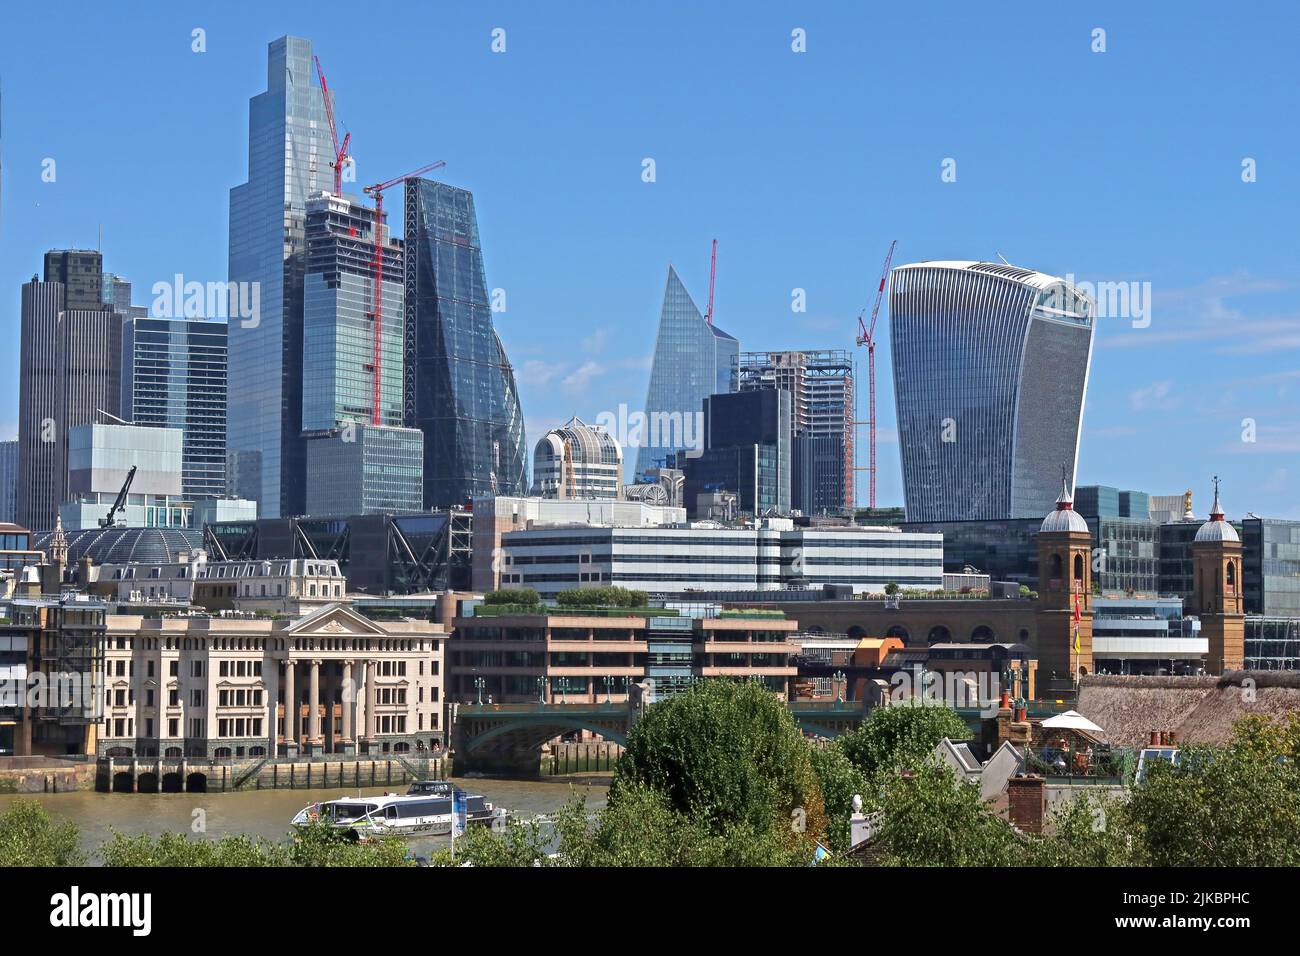 Ville de Londres gratte-ciel et bâtiments financiers, du sud de la rivière, le Walkie Talkie, fromage Grater, derrière la rivière Thames, Londres, Angleterre, Royaume-Uni Banque D'Images